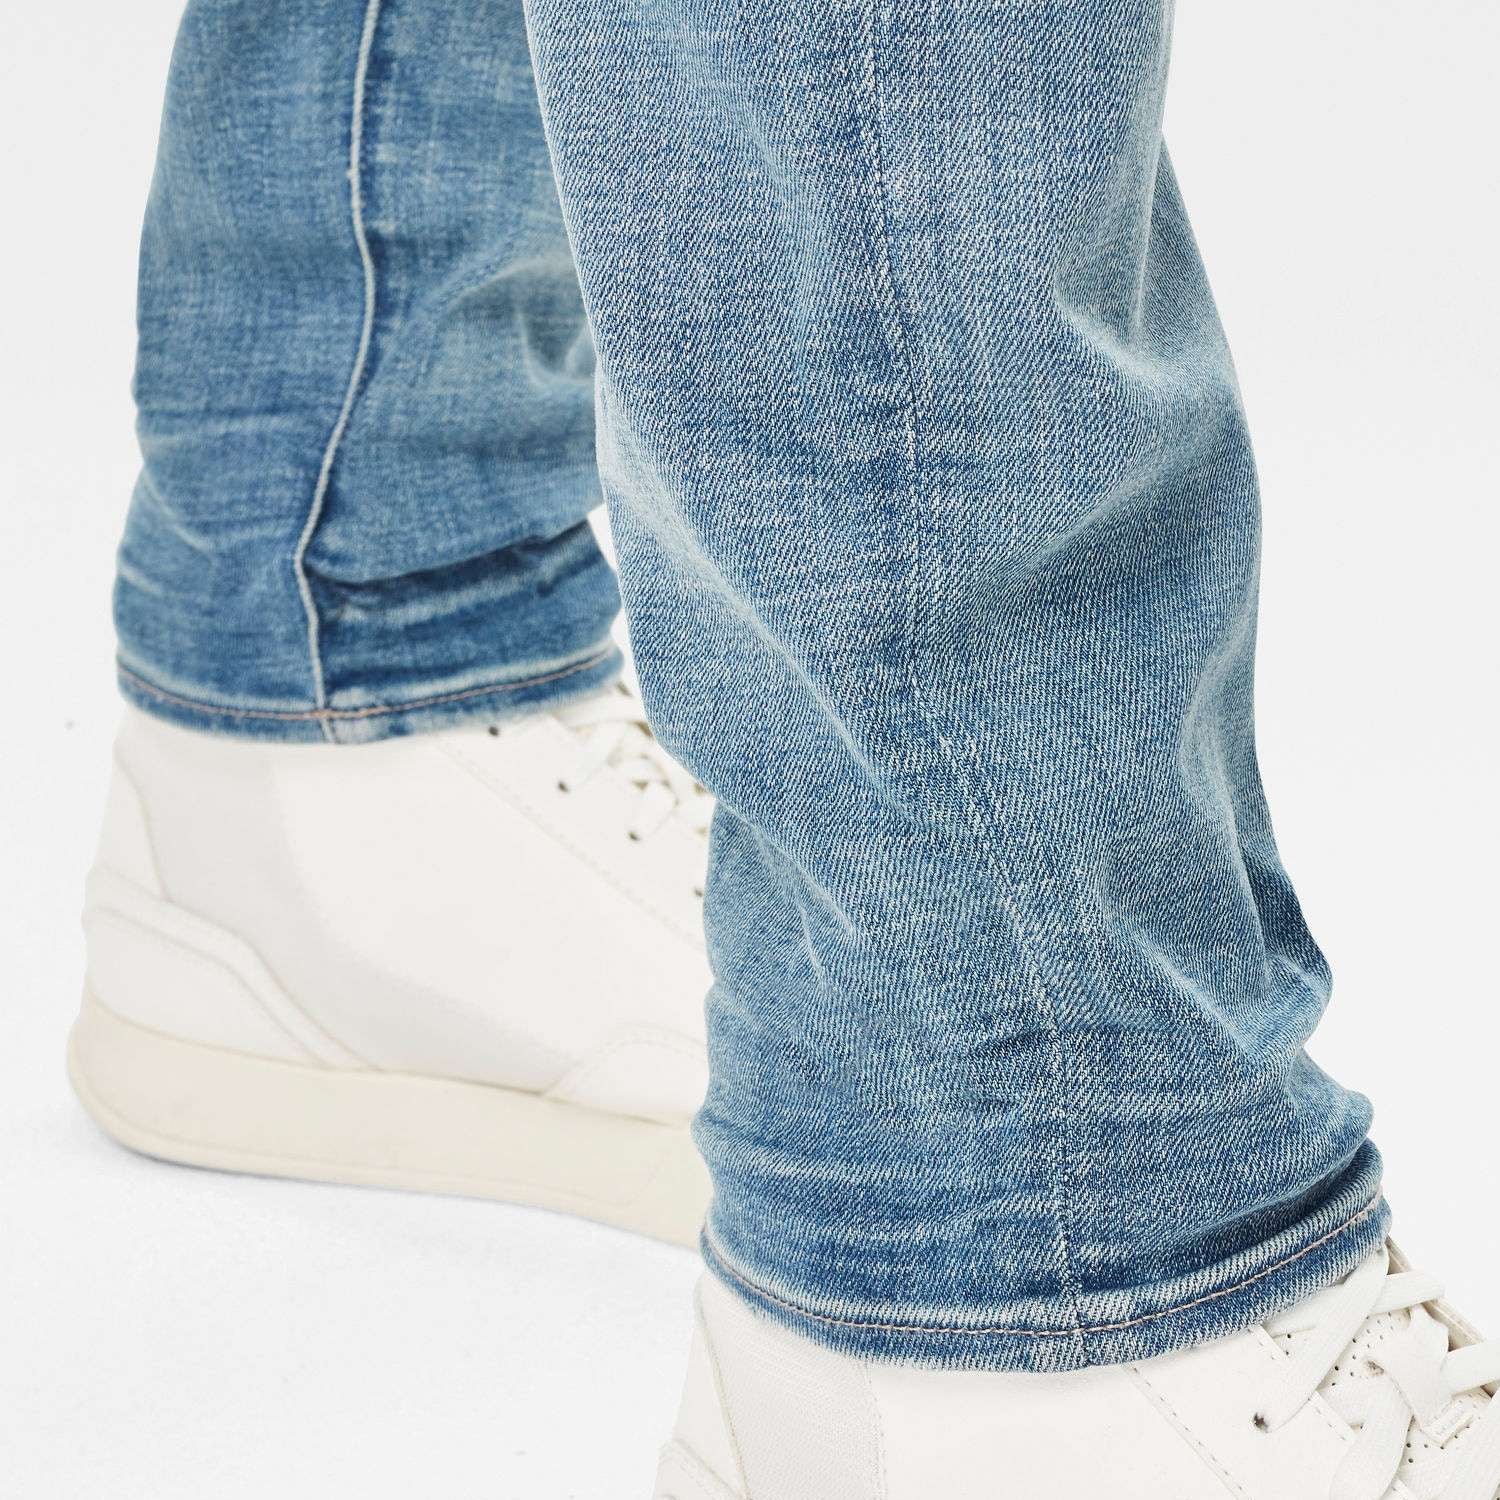 G-Star Lancet Skinny Jeans - Elto Superstretch Vintage Cool Aqua Restored